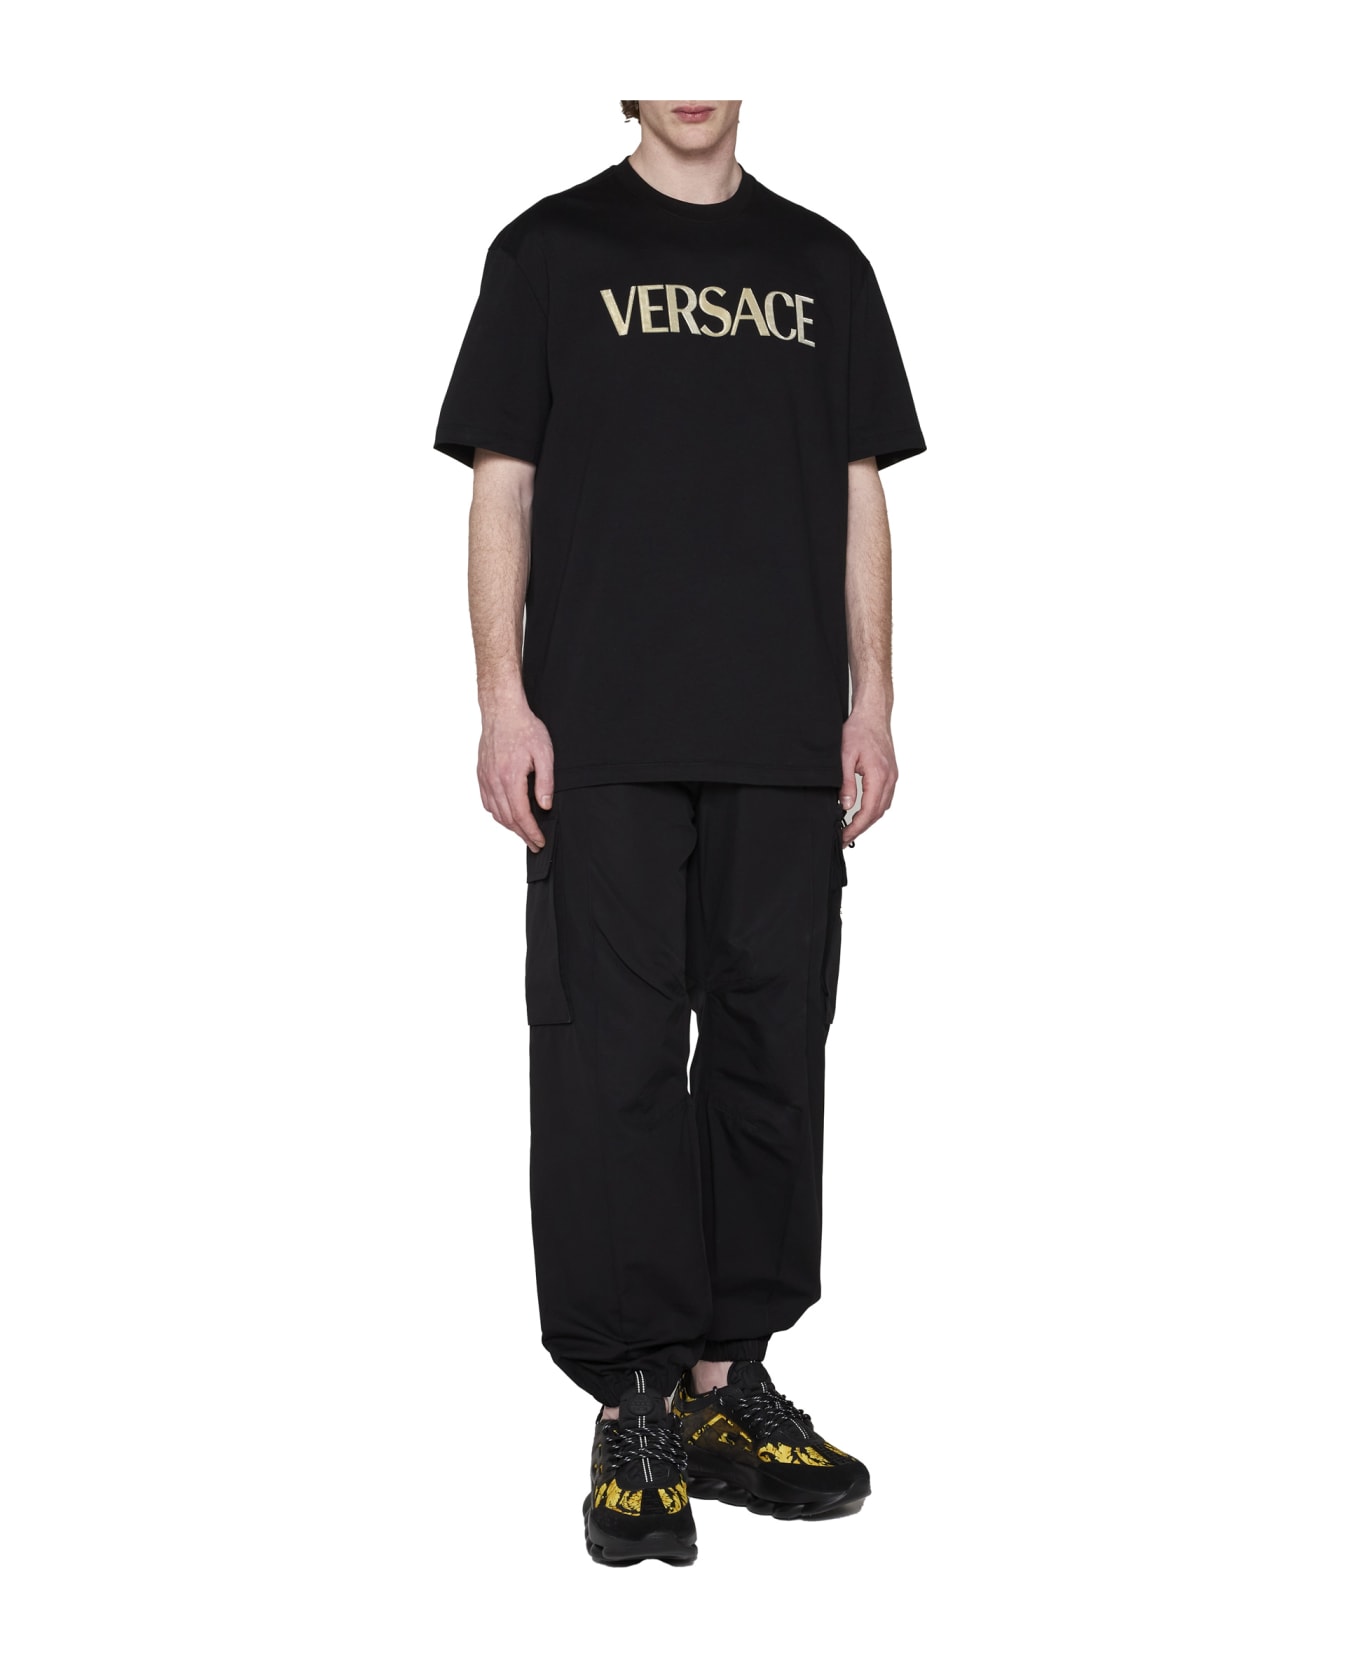 Versace T-shirt - Nero